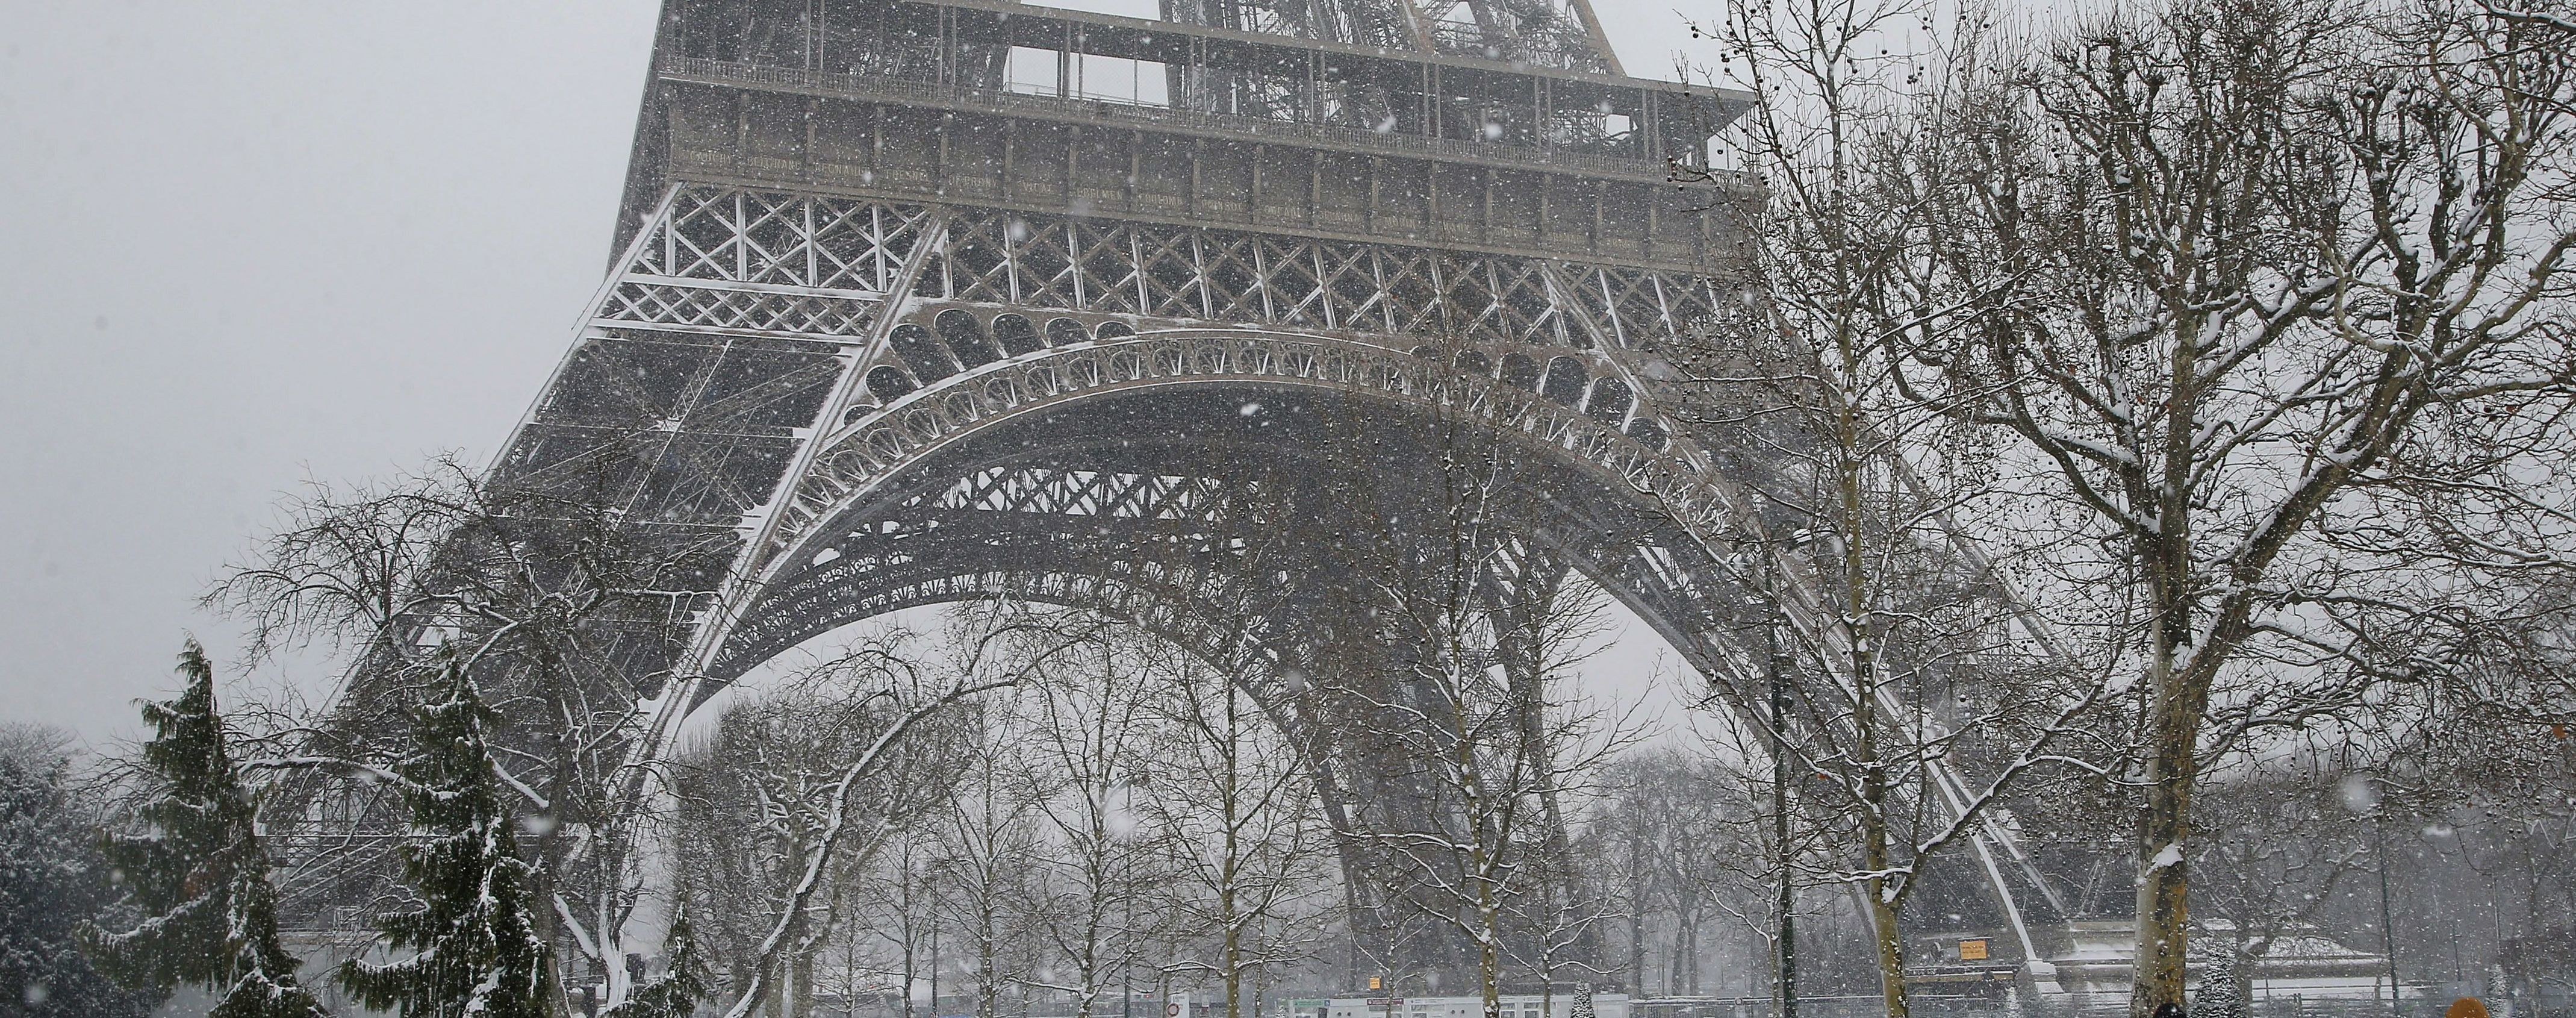 Французская авиакомпания объявила о запуске прямых рейсов в Киев из Парижа